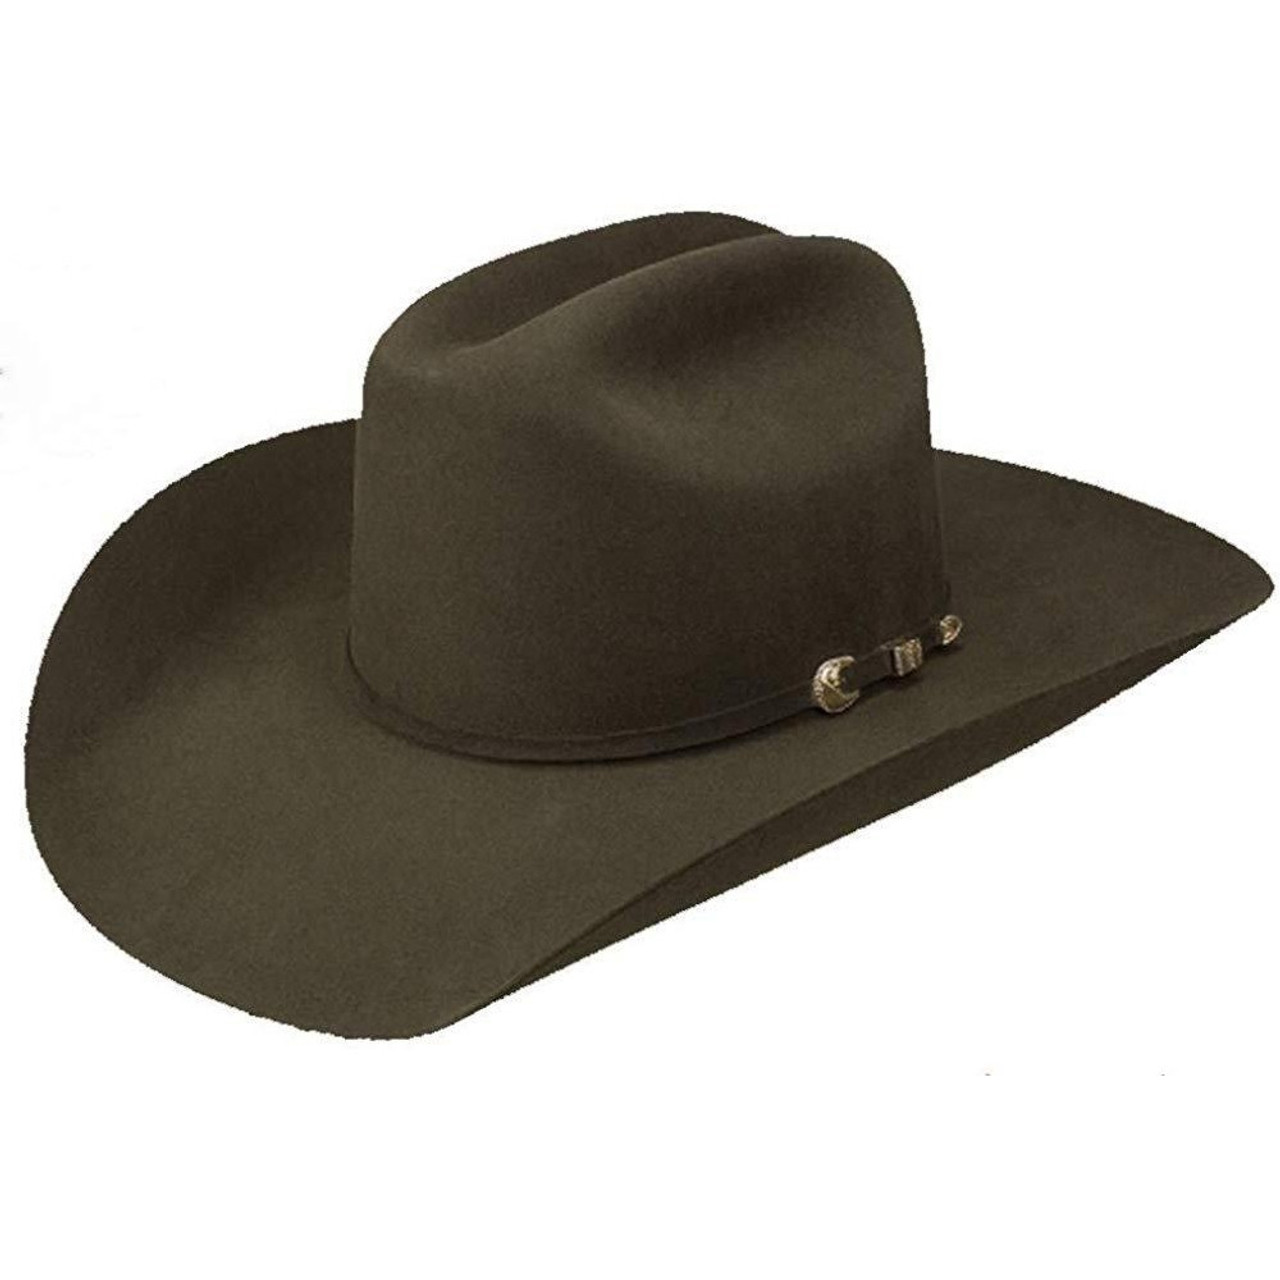 Stetson Felt Hats - Premier Collection 